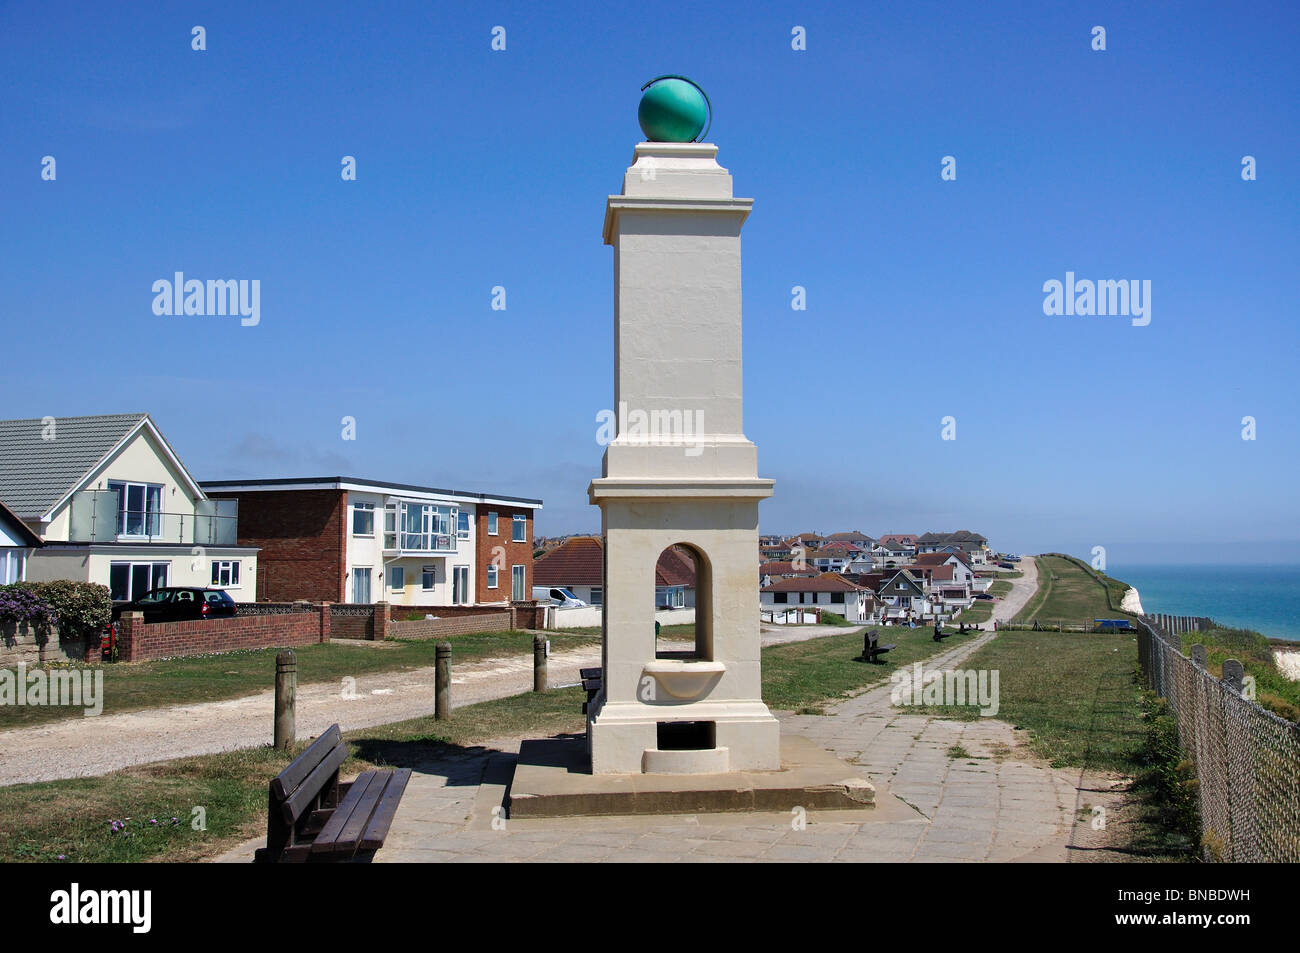 Le Méridien & George V Monument, La Promenade, Peacehaven, East Sussex, Angleterre, Royaume-Uni Banque D'Images